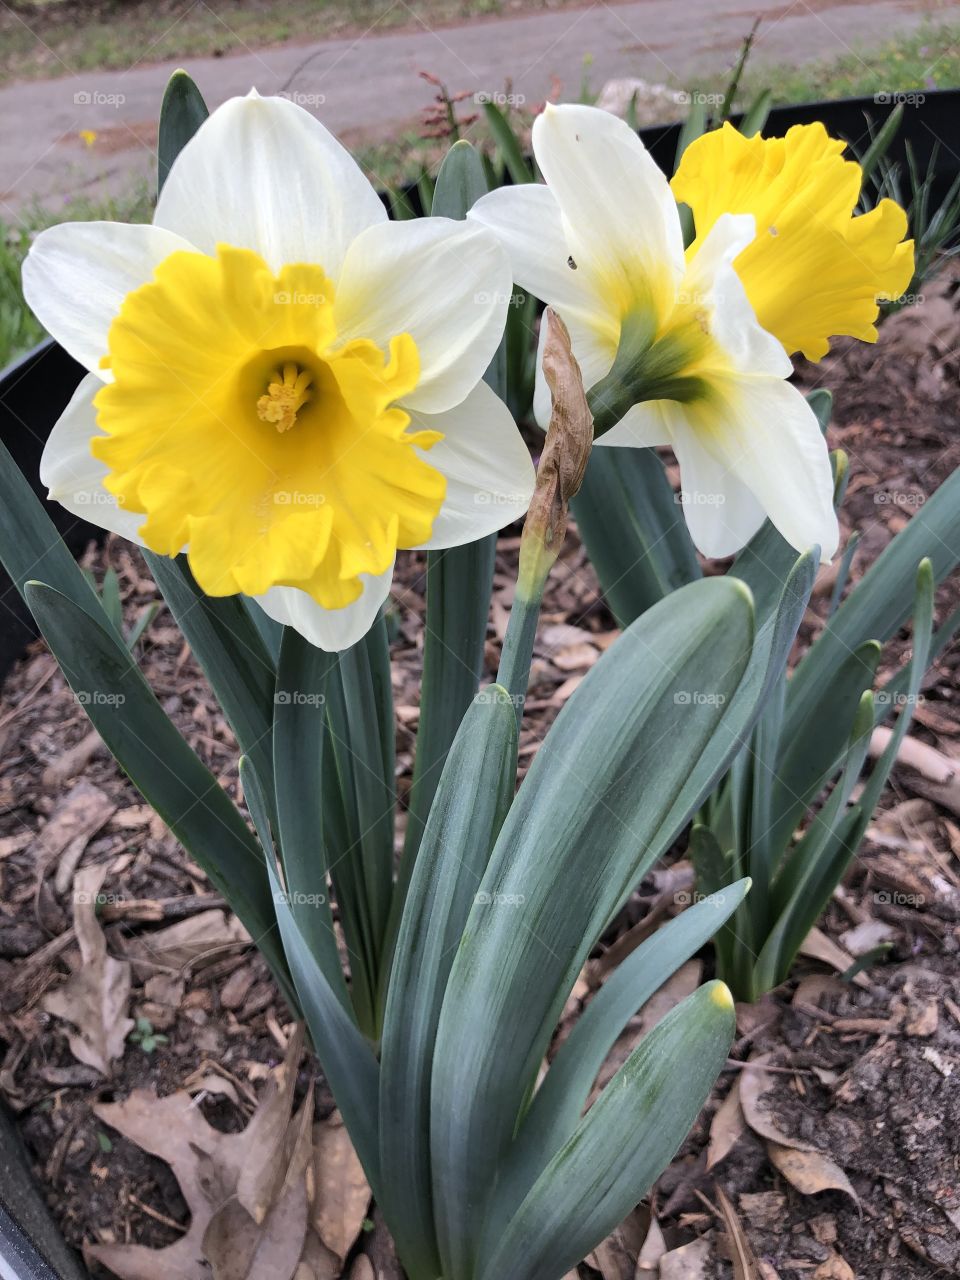 Beautiful Daffodils in spring 